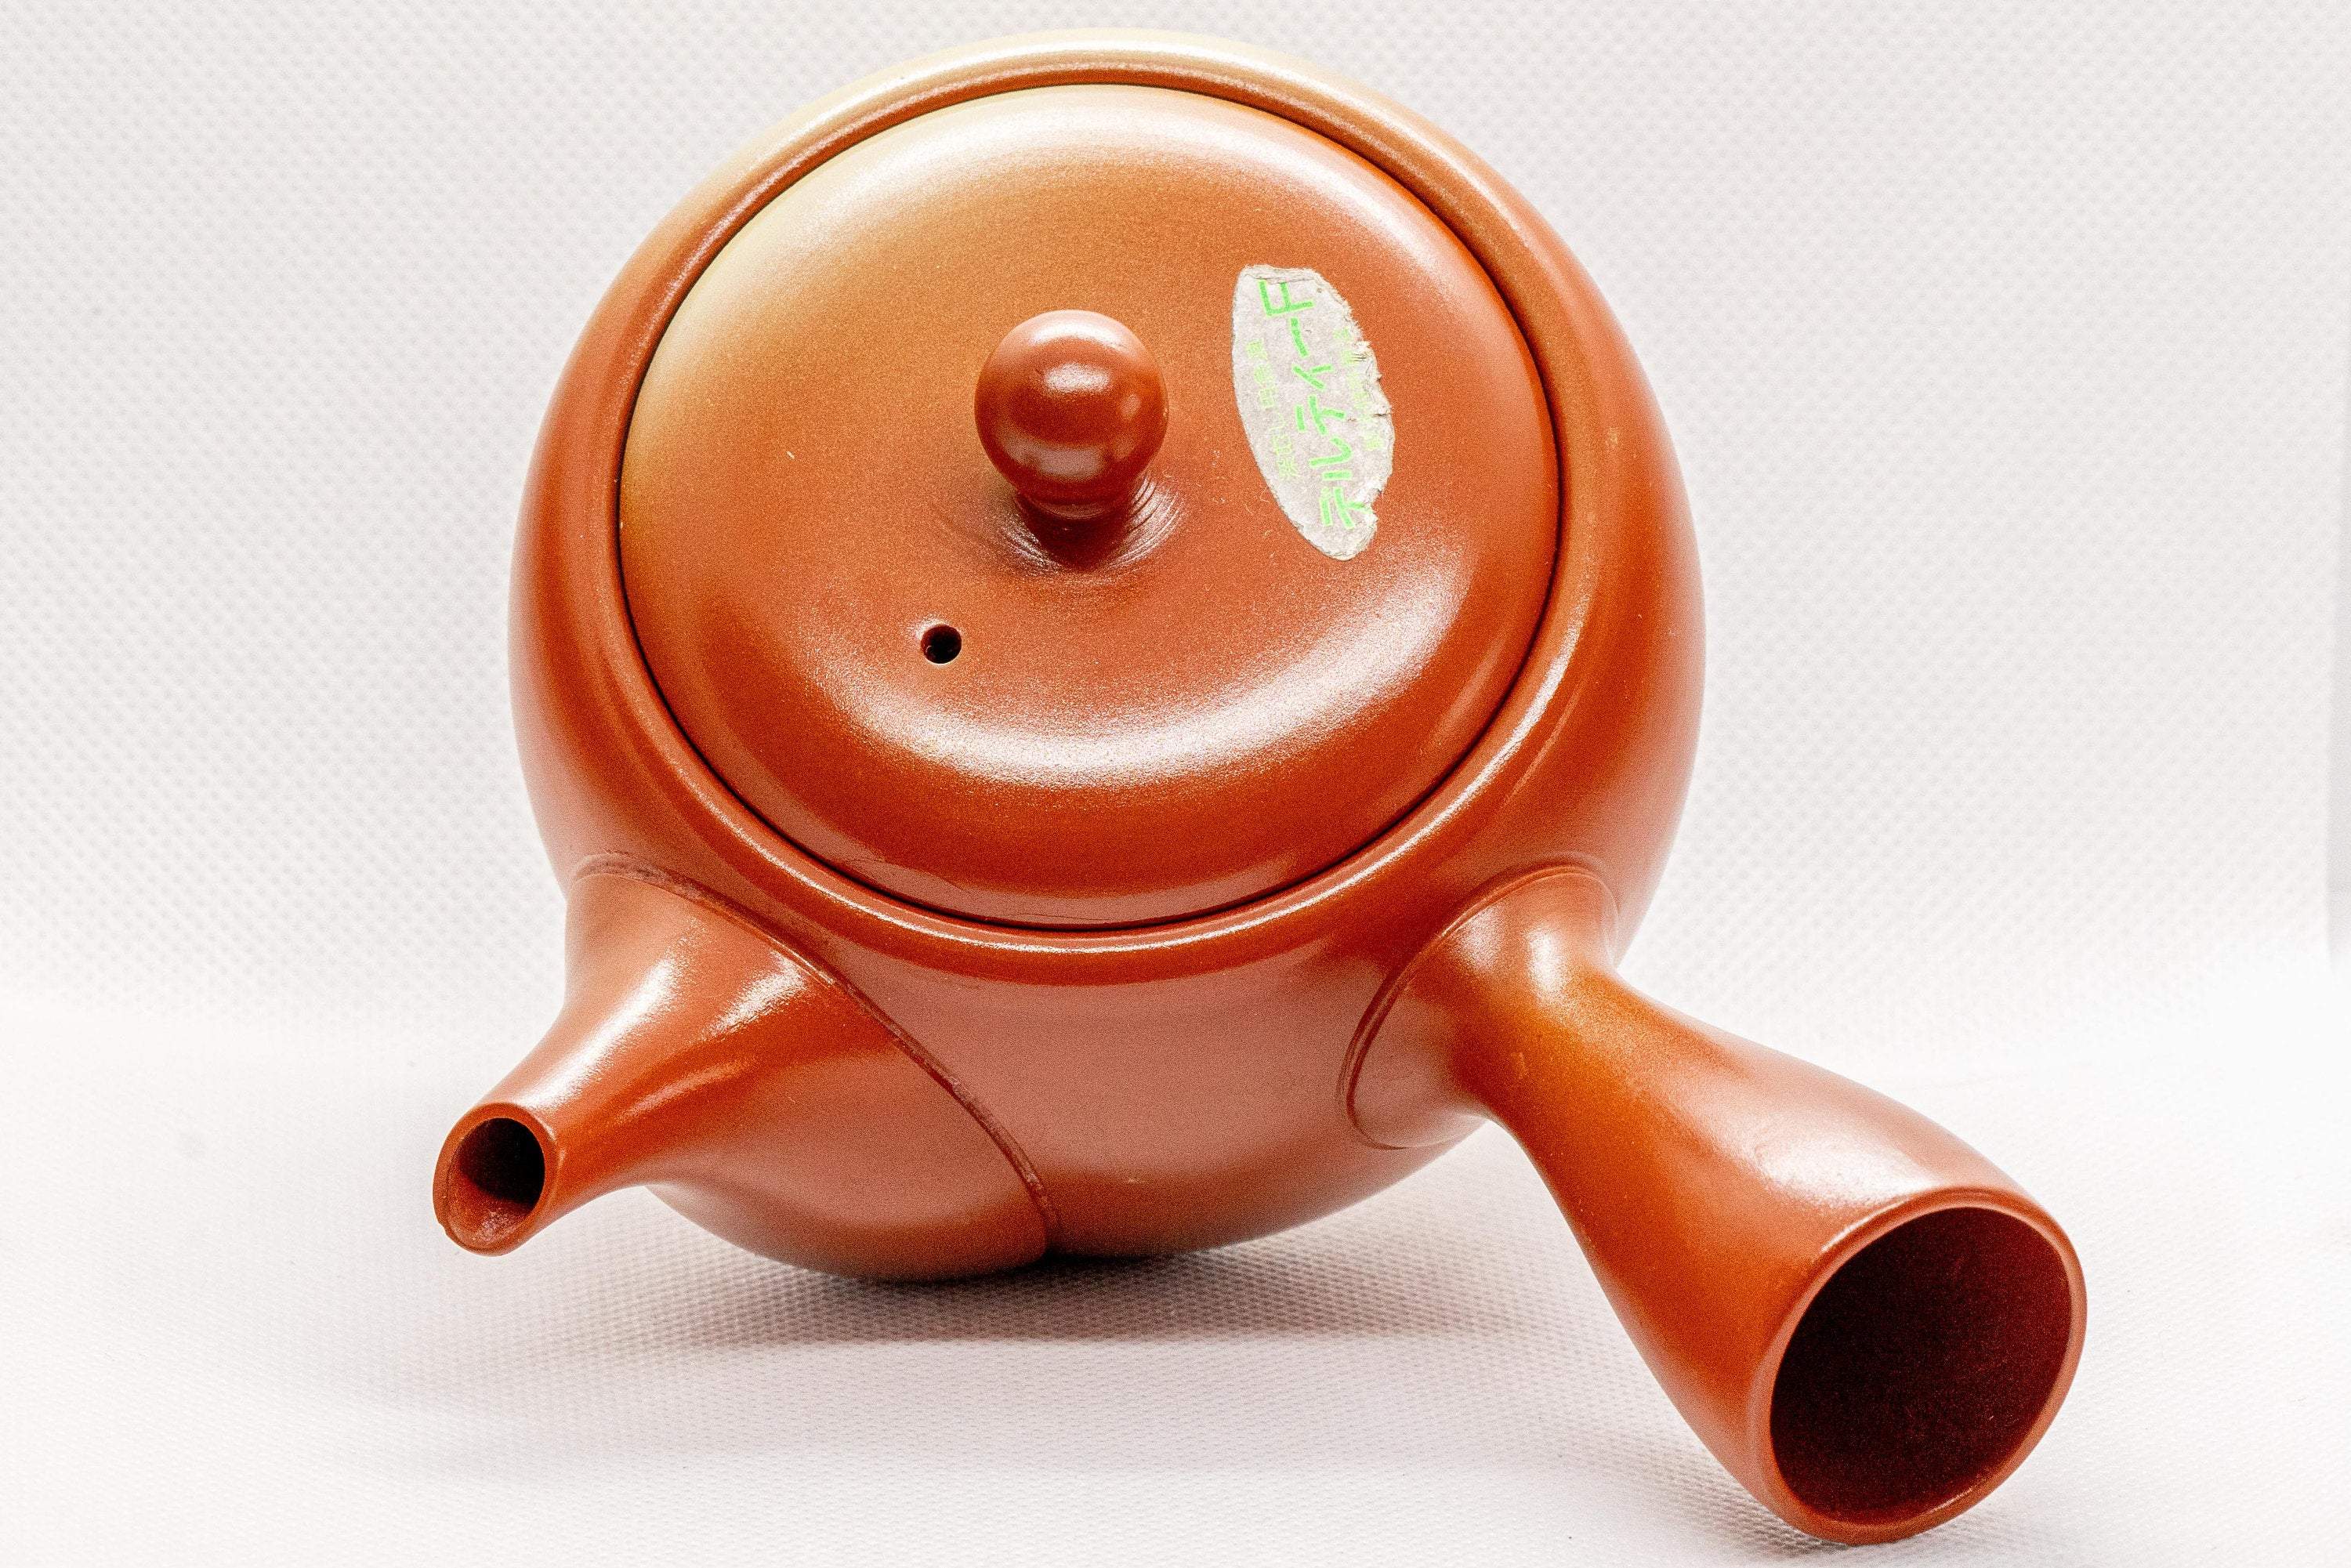 Japanese Kyusu - Red Shudei Tokoname-yaki Ceramic Teapot with Mesh Strainer - 350ml - Tezumi